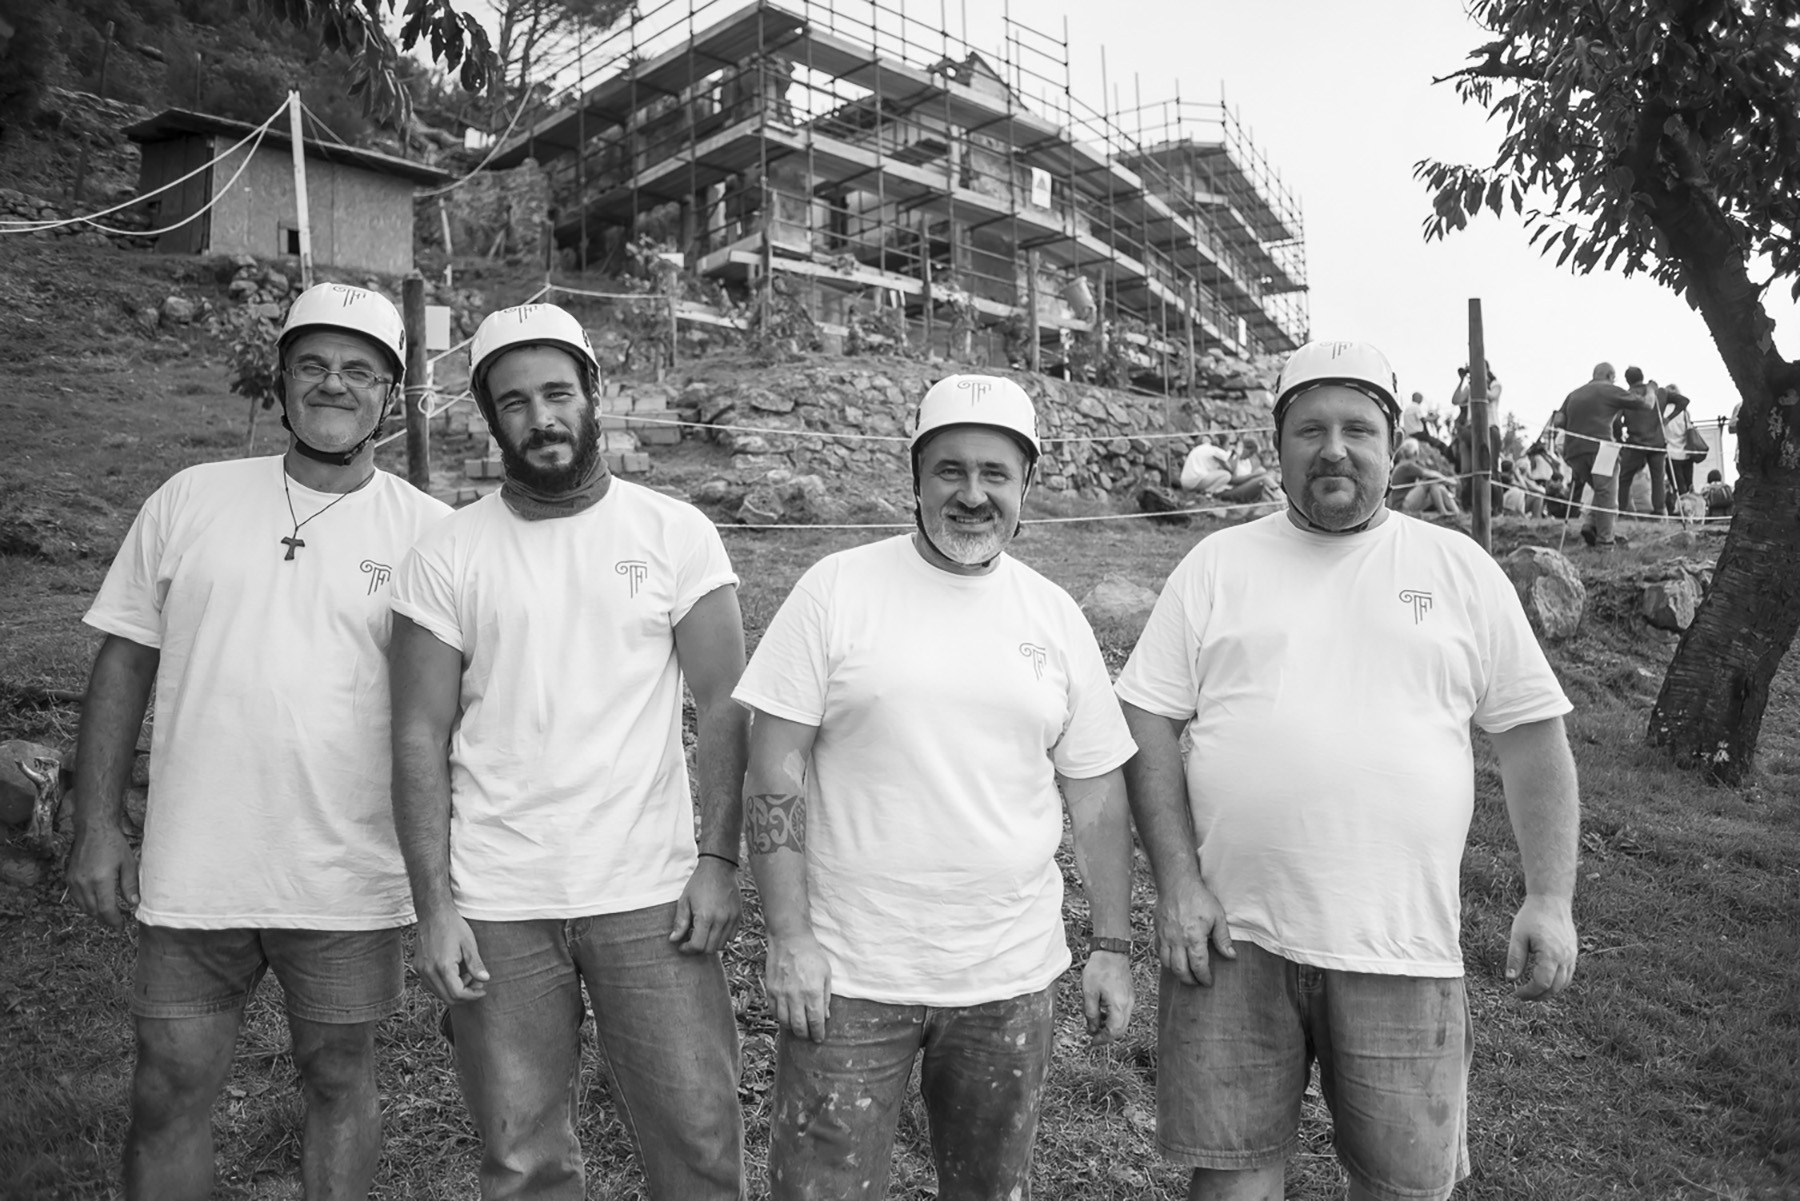 Formento Restauri, ditta edile di Finale Ligure, ha maestranze competenti e preparate e garantisce interventi di restauro in piena sicurezza per i suoi operai e per gli edifici su cui si interviene.